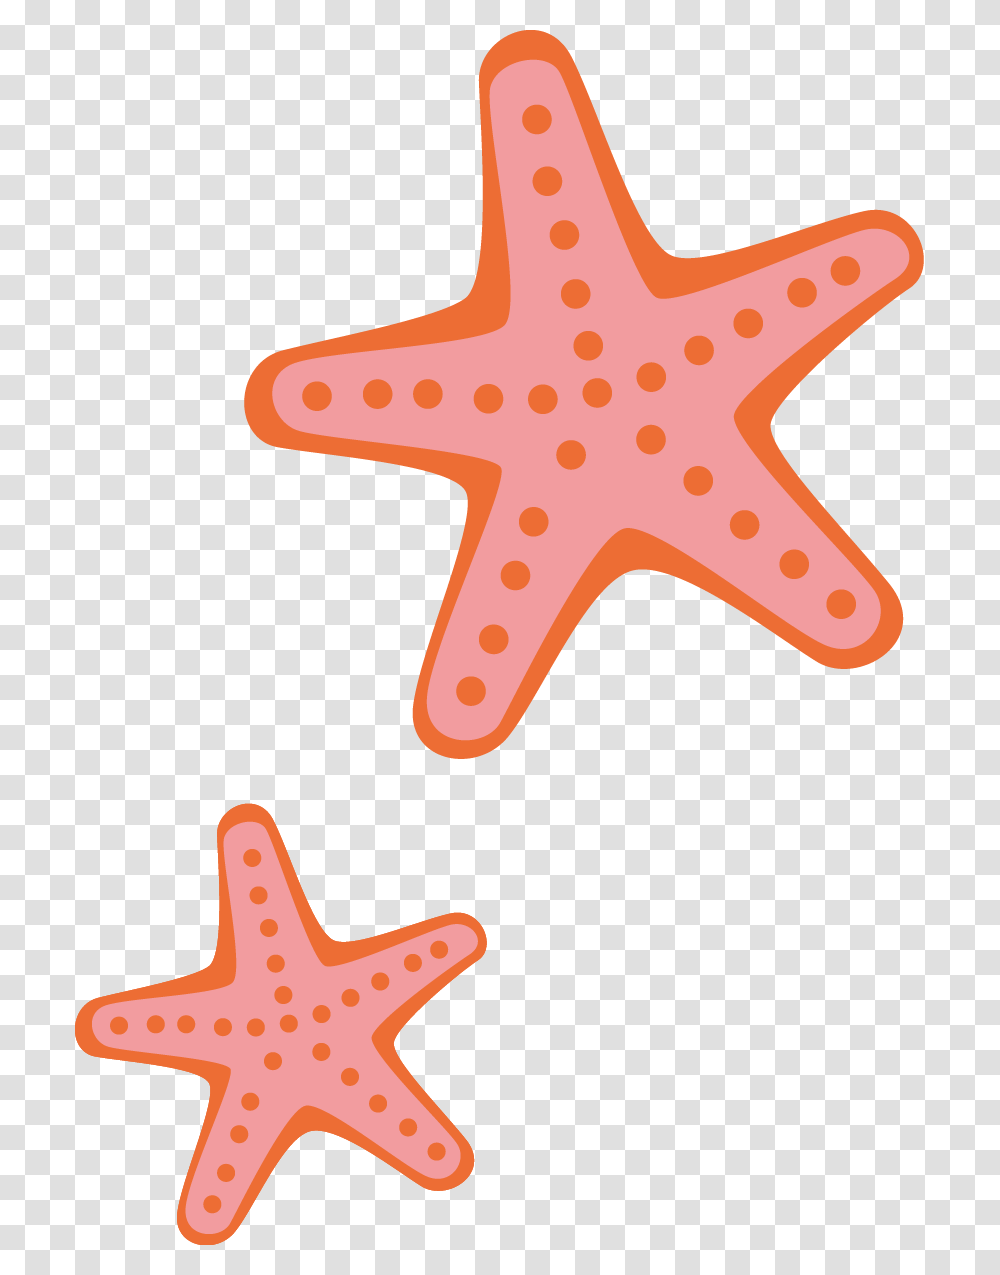 Desenho De Estrela Do Mar Cartoon, Starfish, Invertebrate, Sea Life, Animal Transparent Png